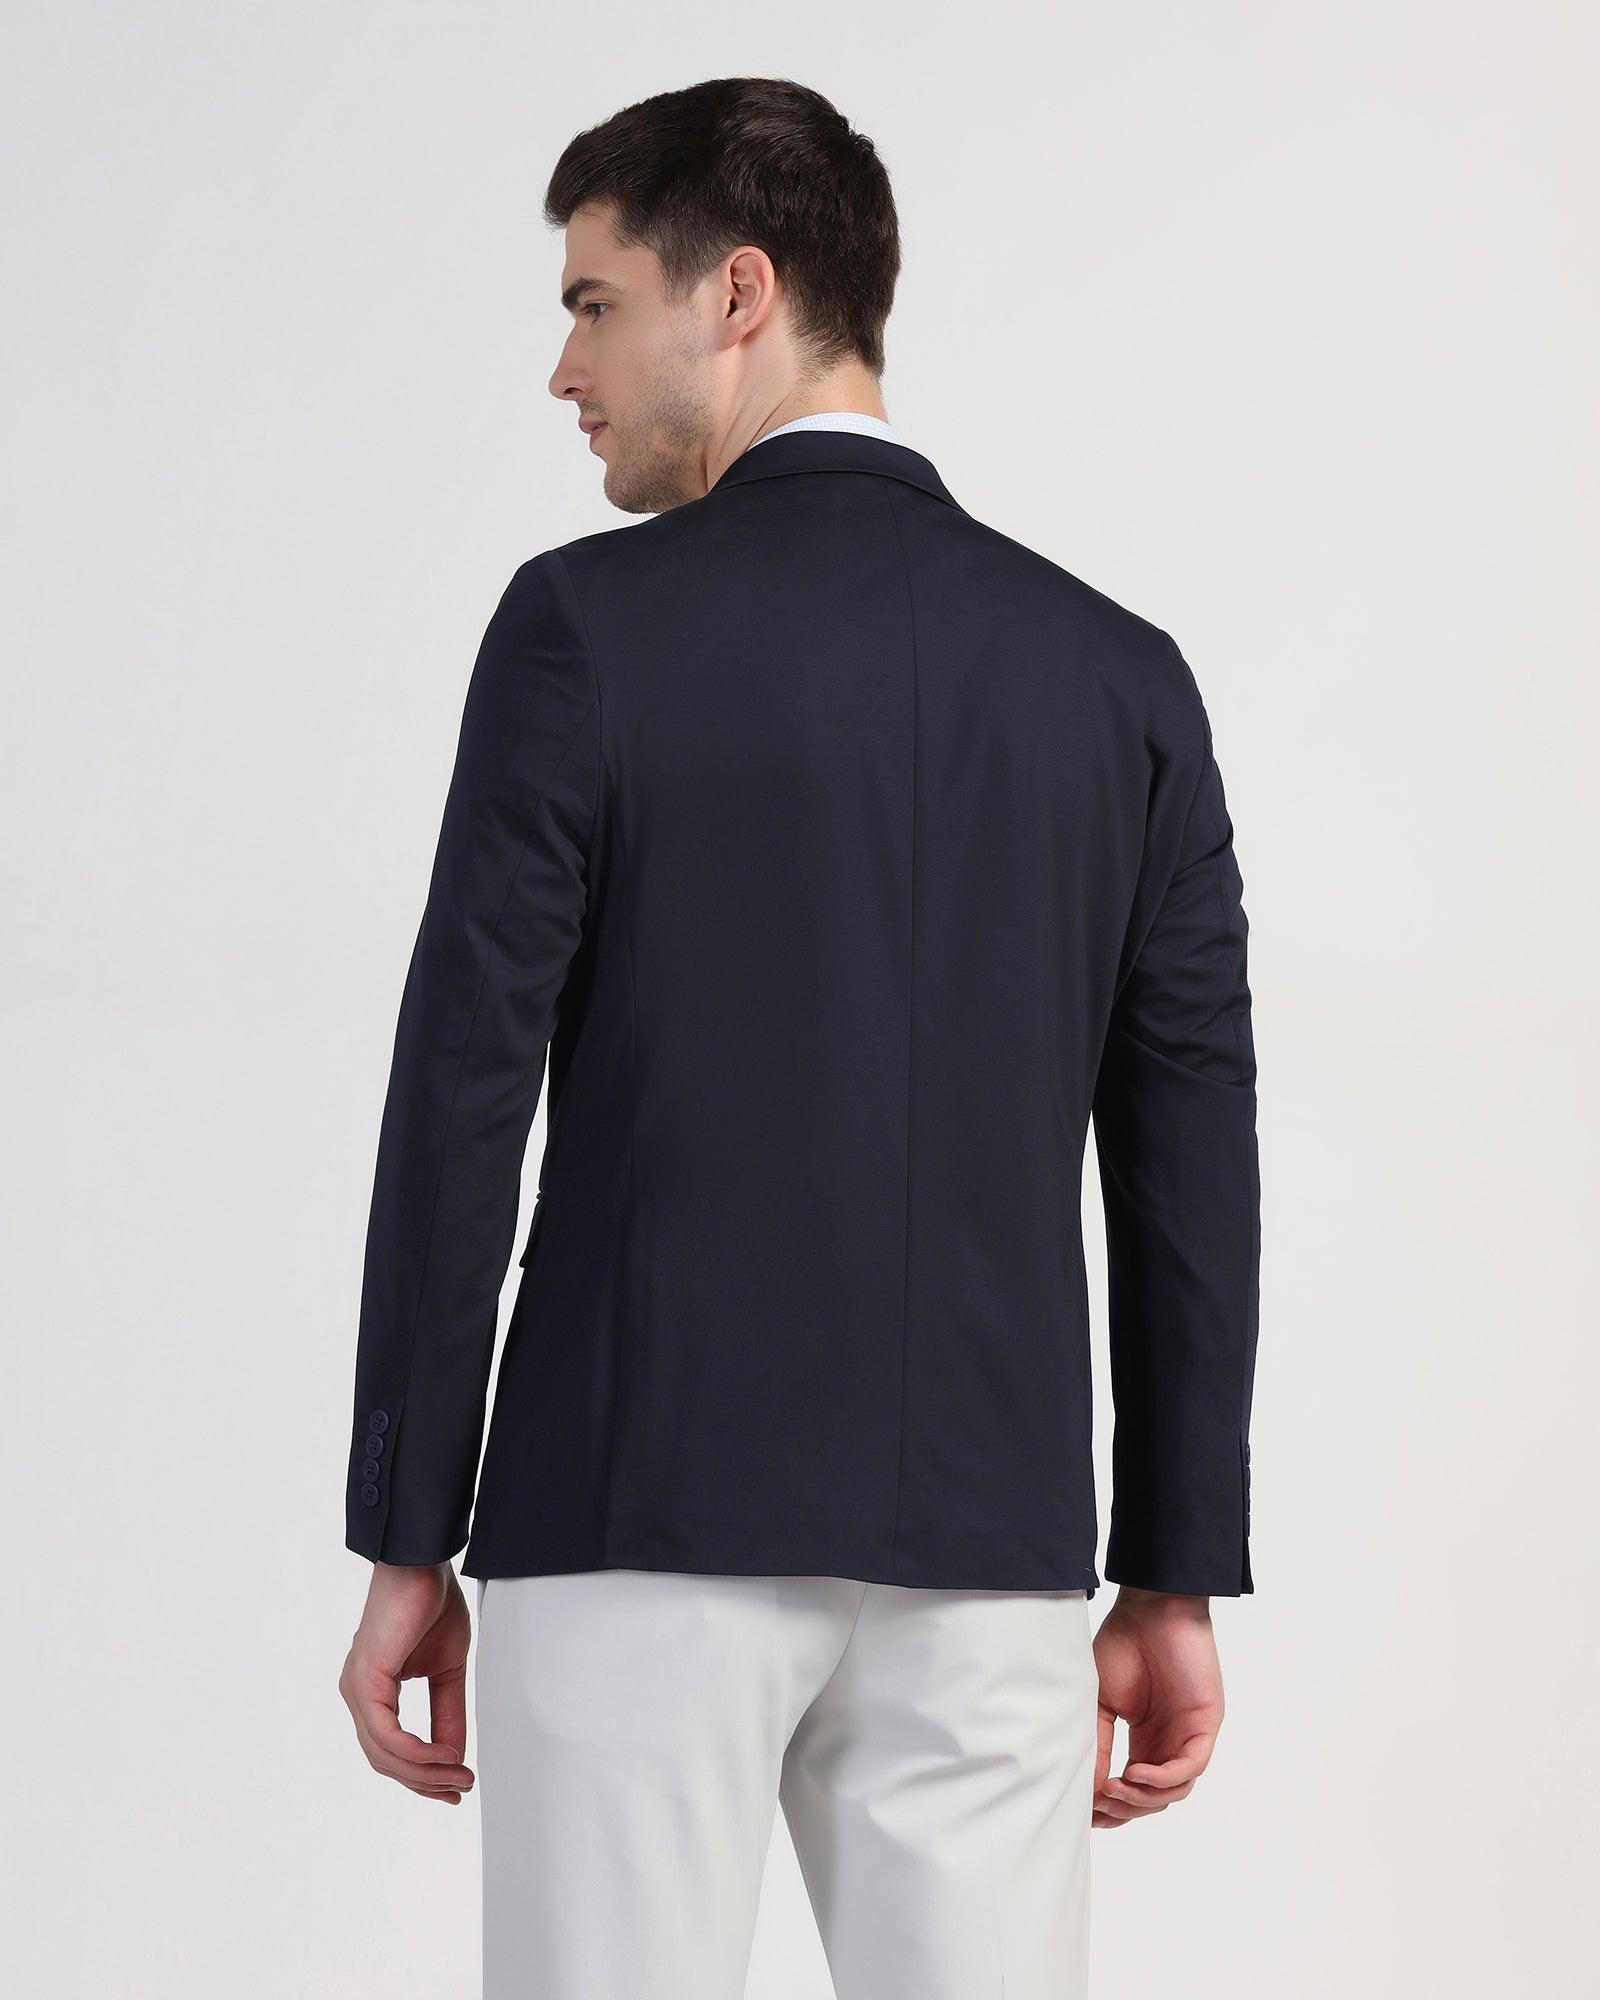 TechPro Formal Navy Textured Blazer - Maspar